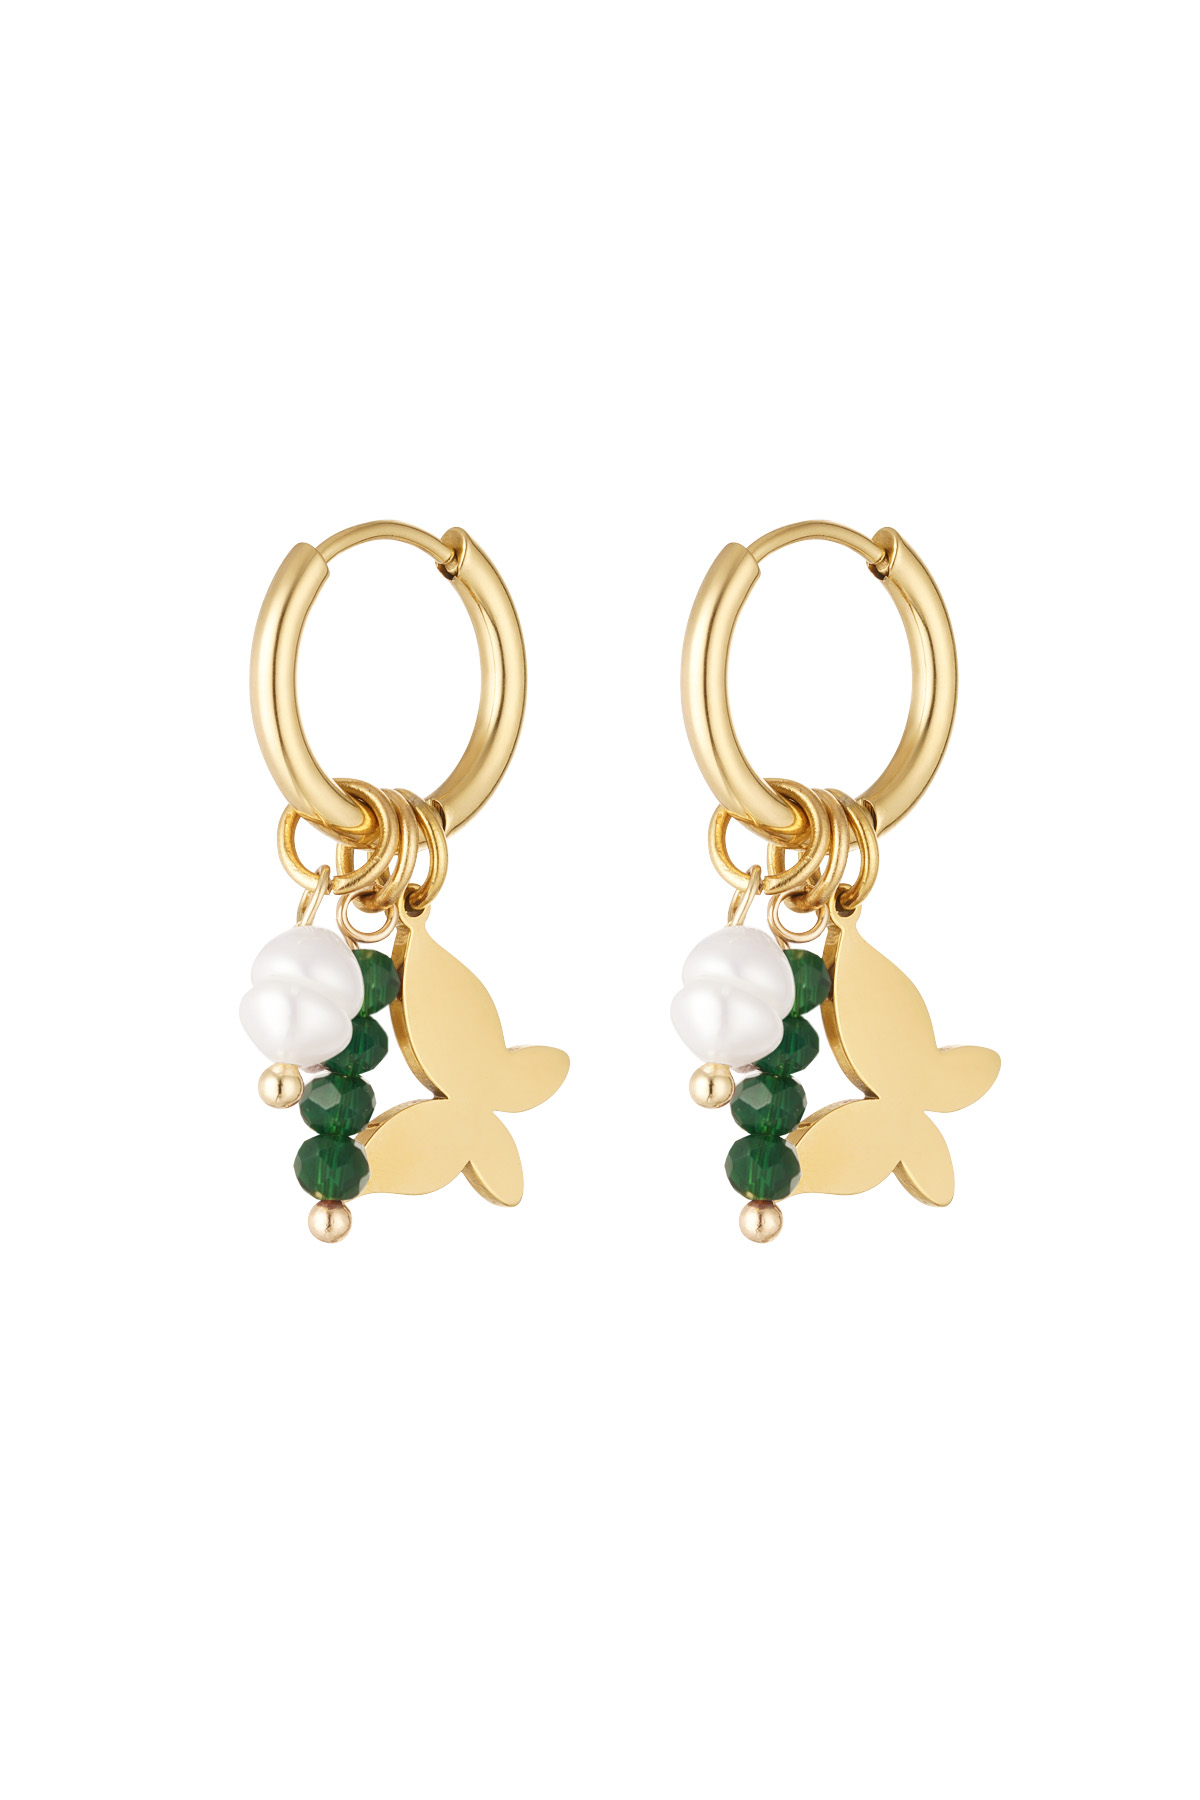 Schmetterlingsohrringe mit Perlen - gold/grün